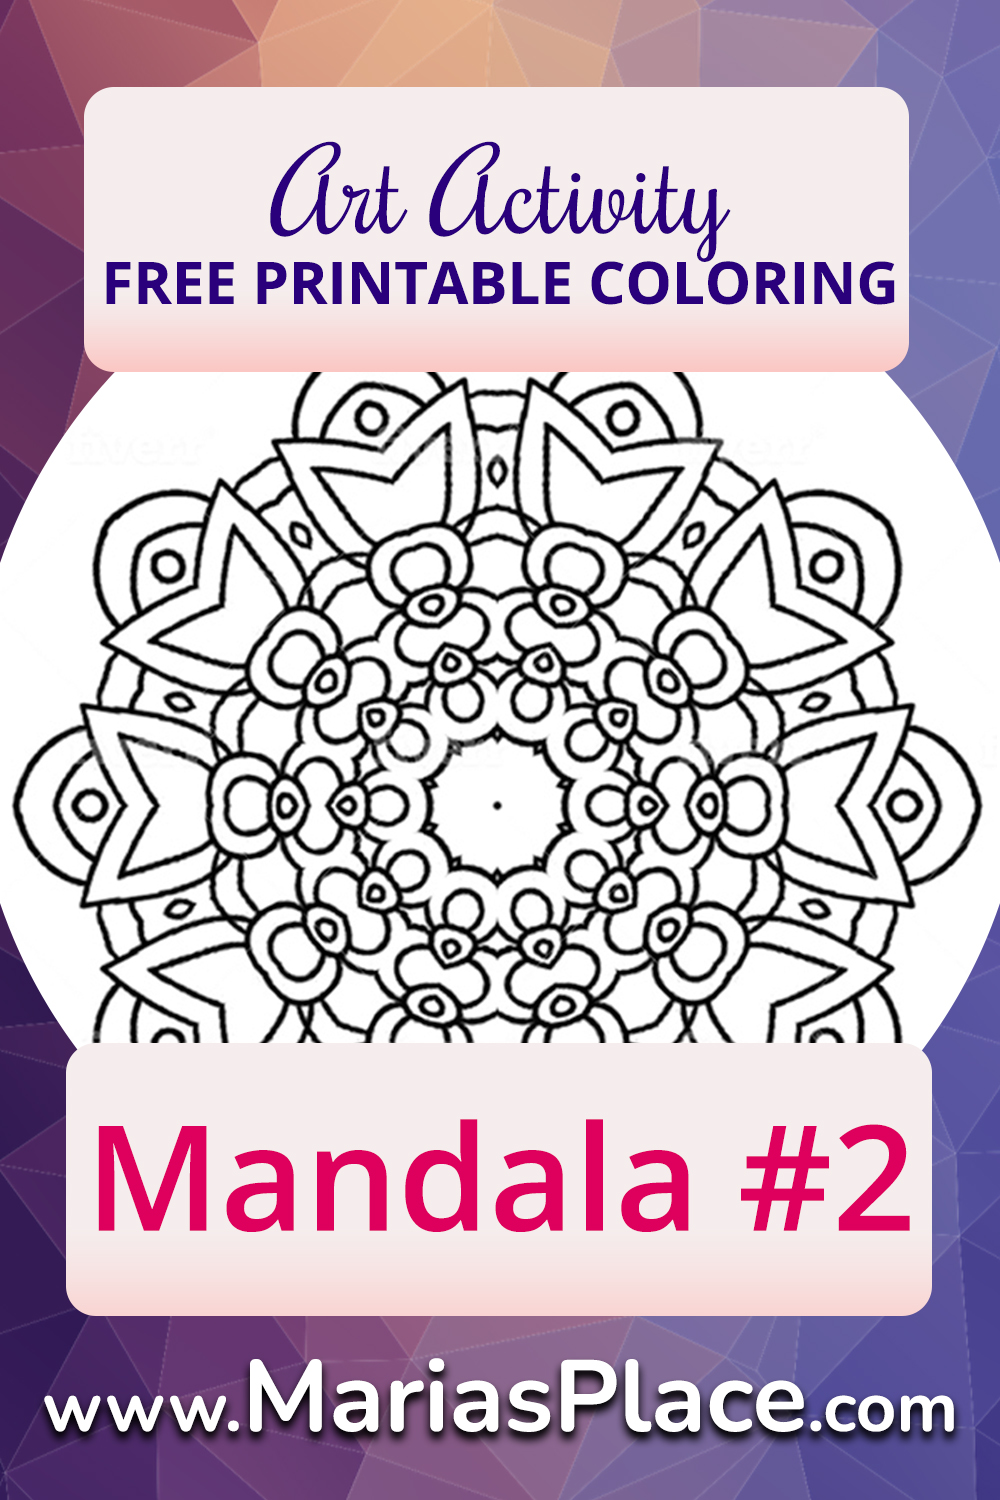 Mandala #2